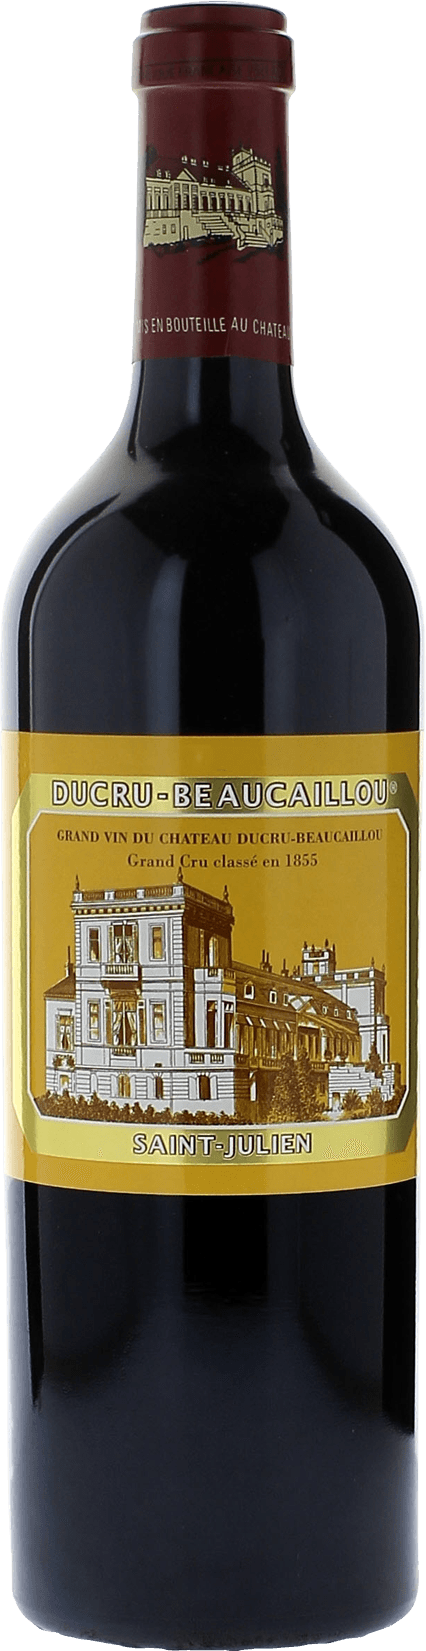 Ducru beaucaillou 2000 2me Grand cru class Saint-Julien, Bordeaux rouge